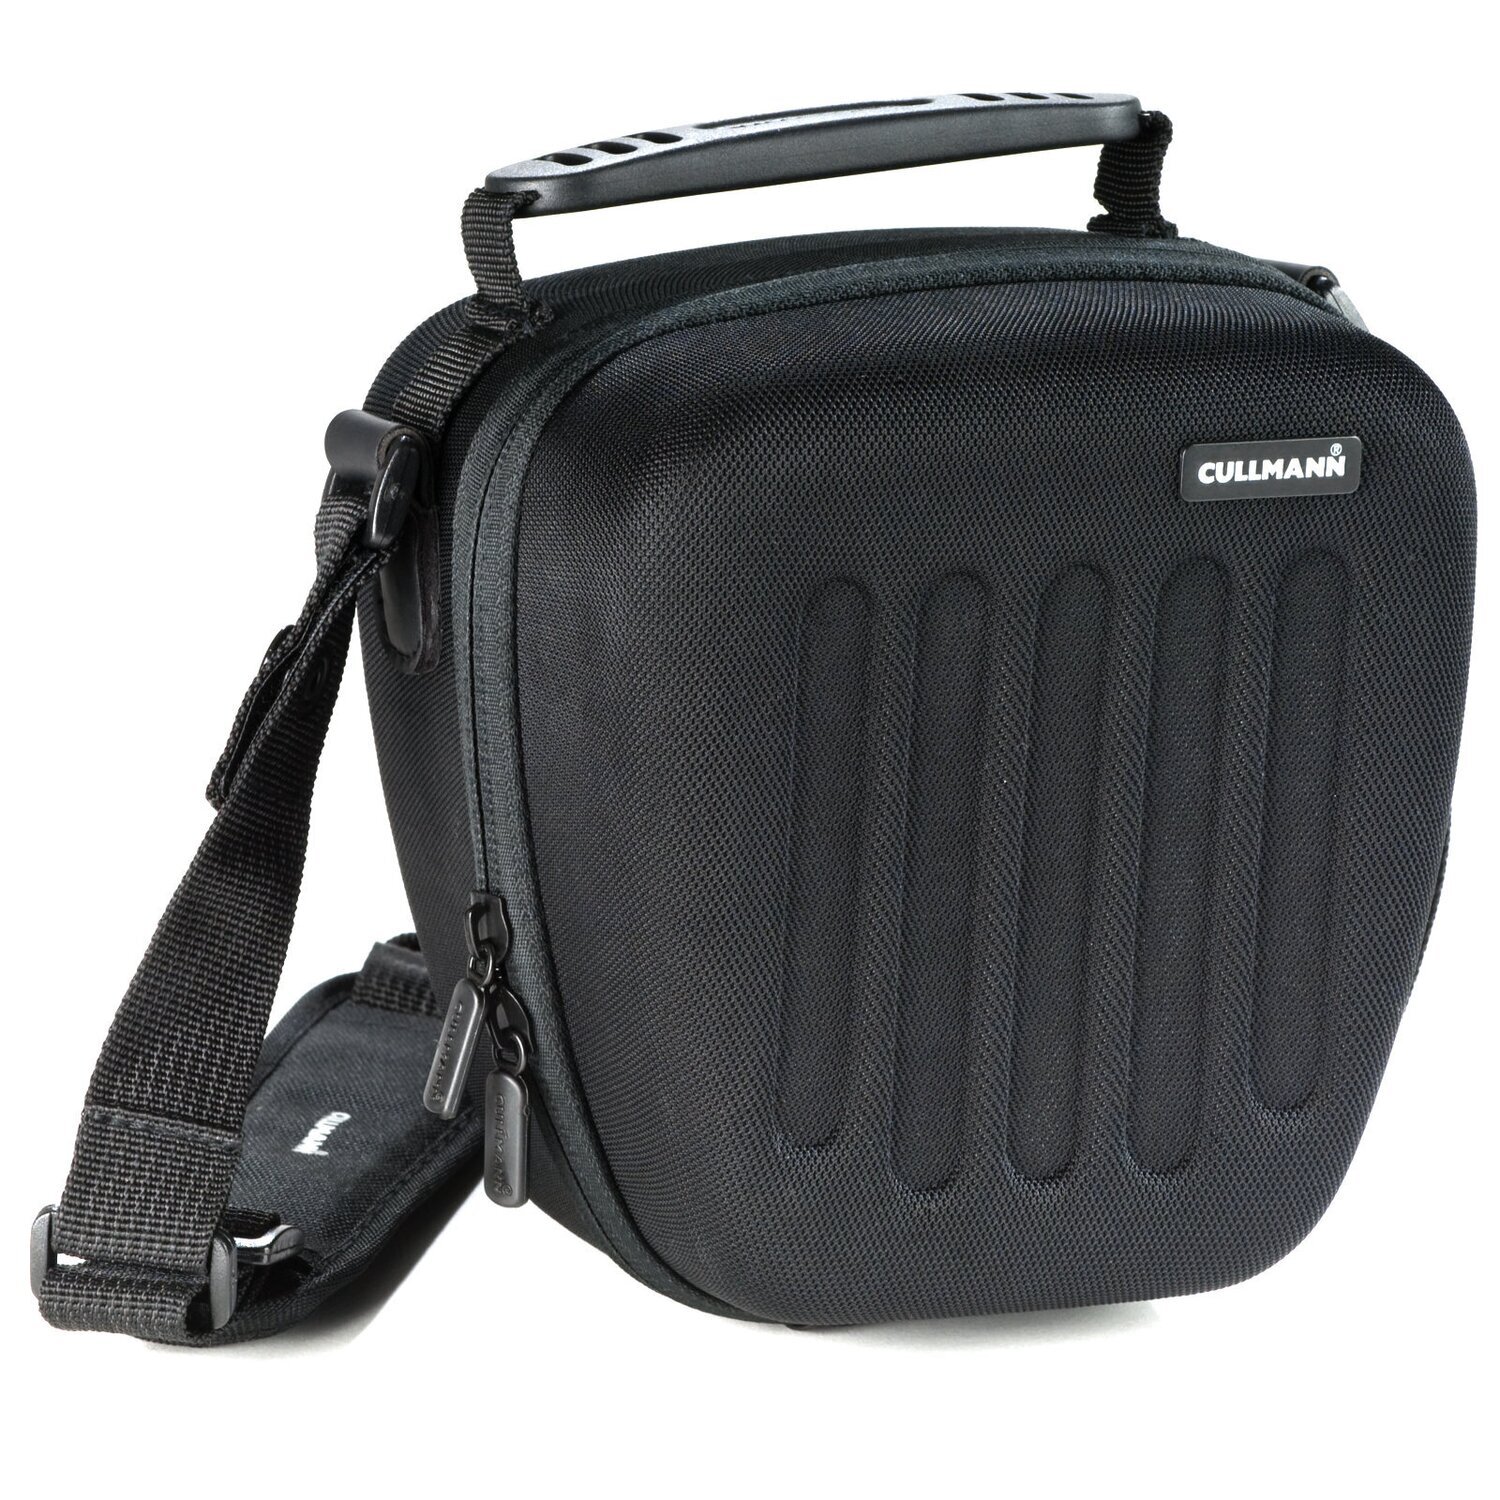 Hardcase Hartschalen Kameratasche passend für Panasonic Lumix DMC-FZ82